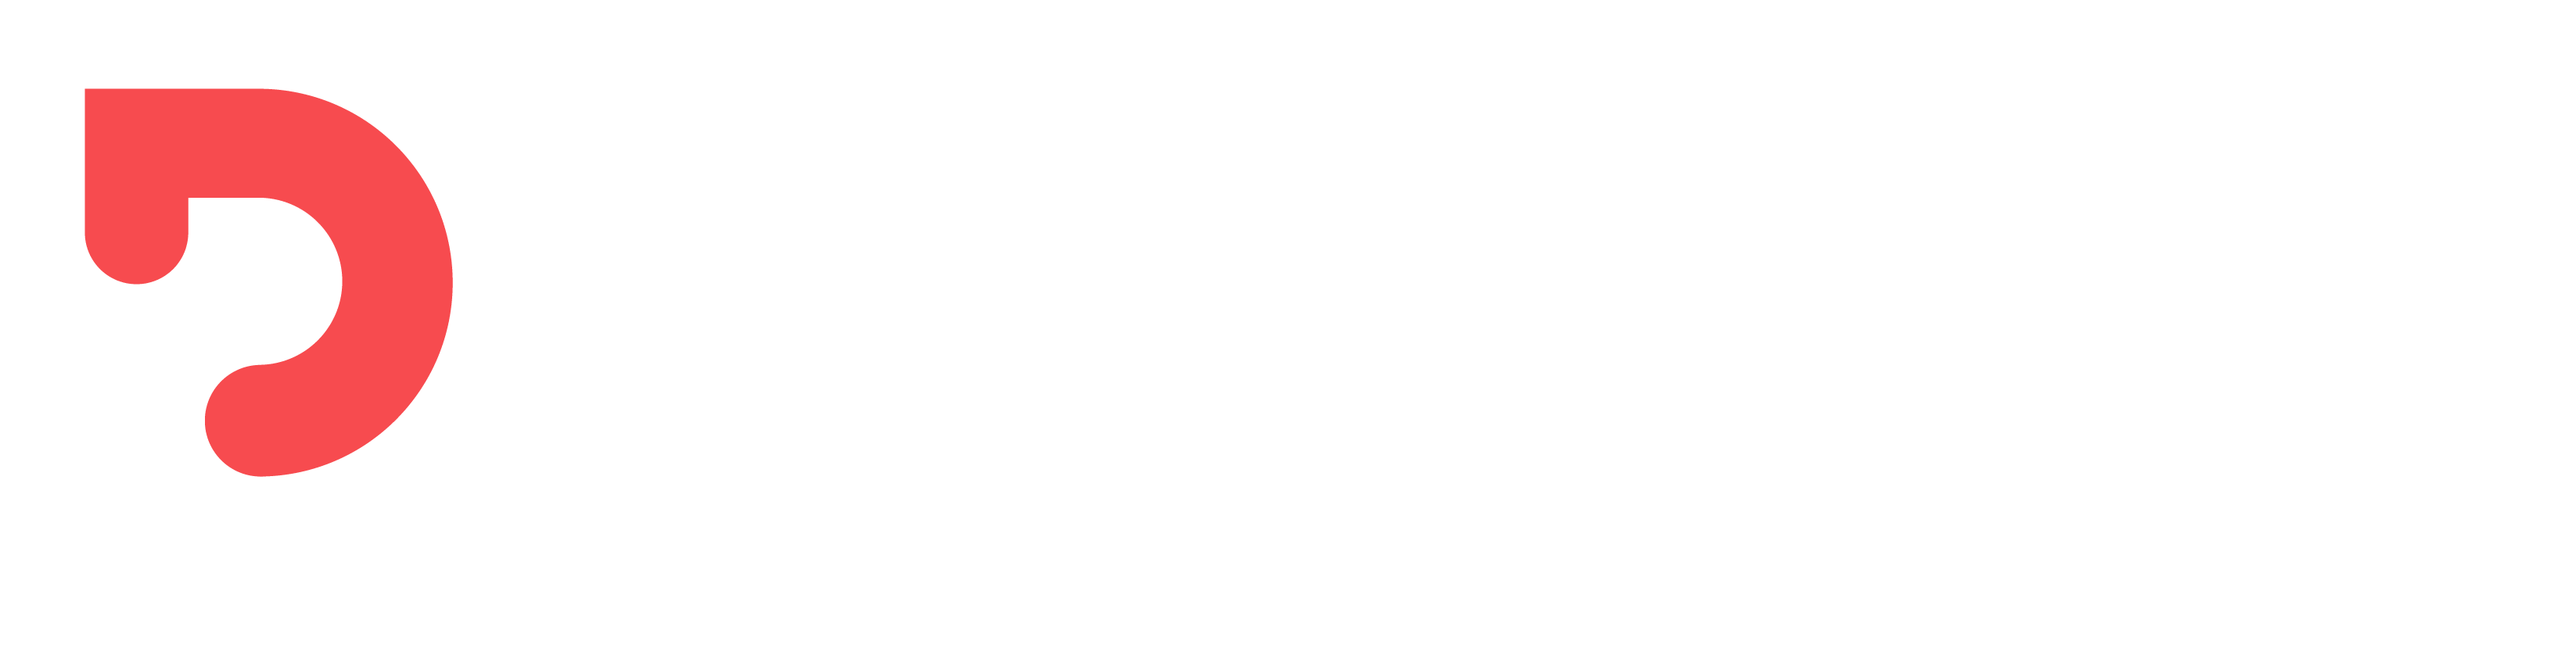 Logo Planexpo blanc avec le P en rouge - format horizontal et fond transparent